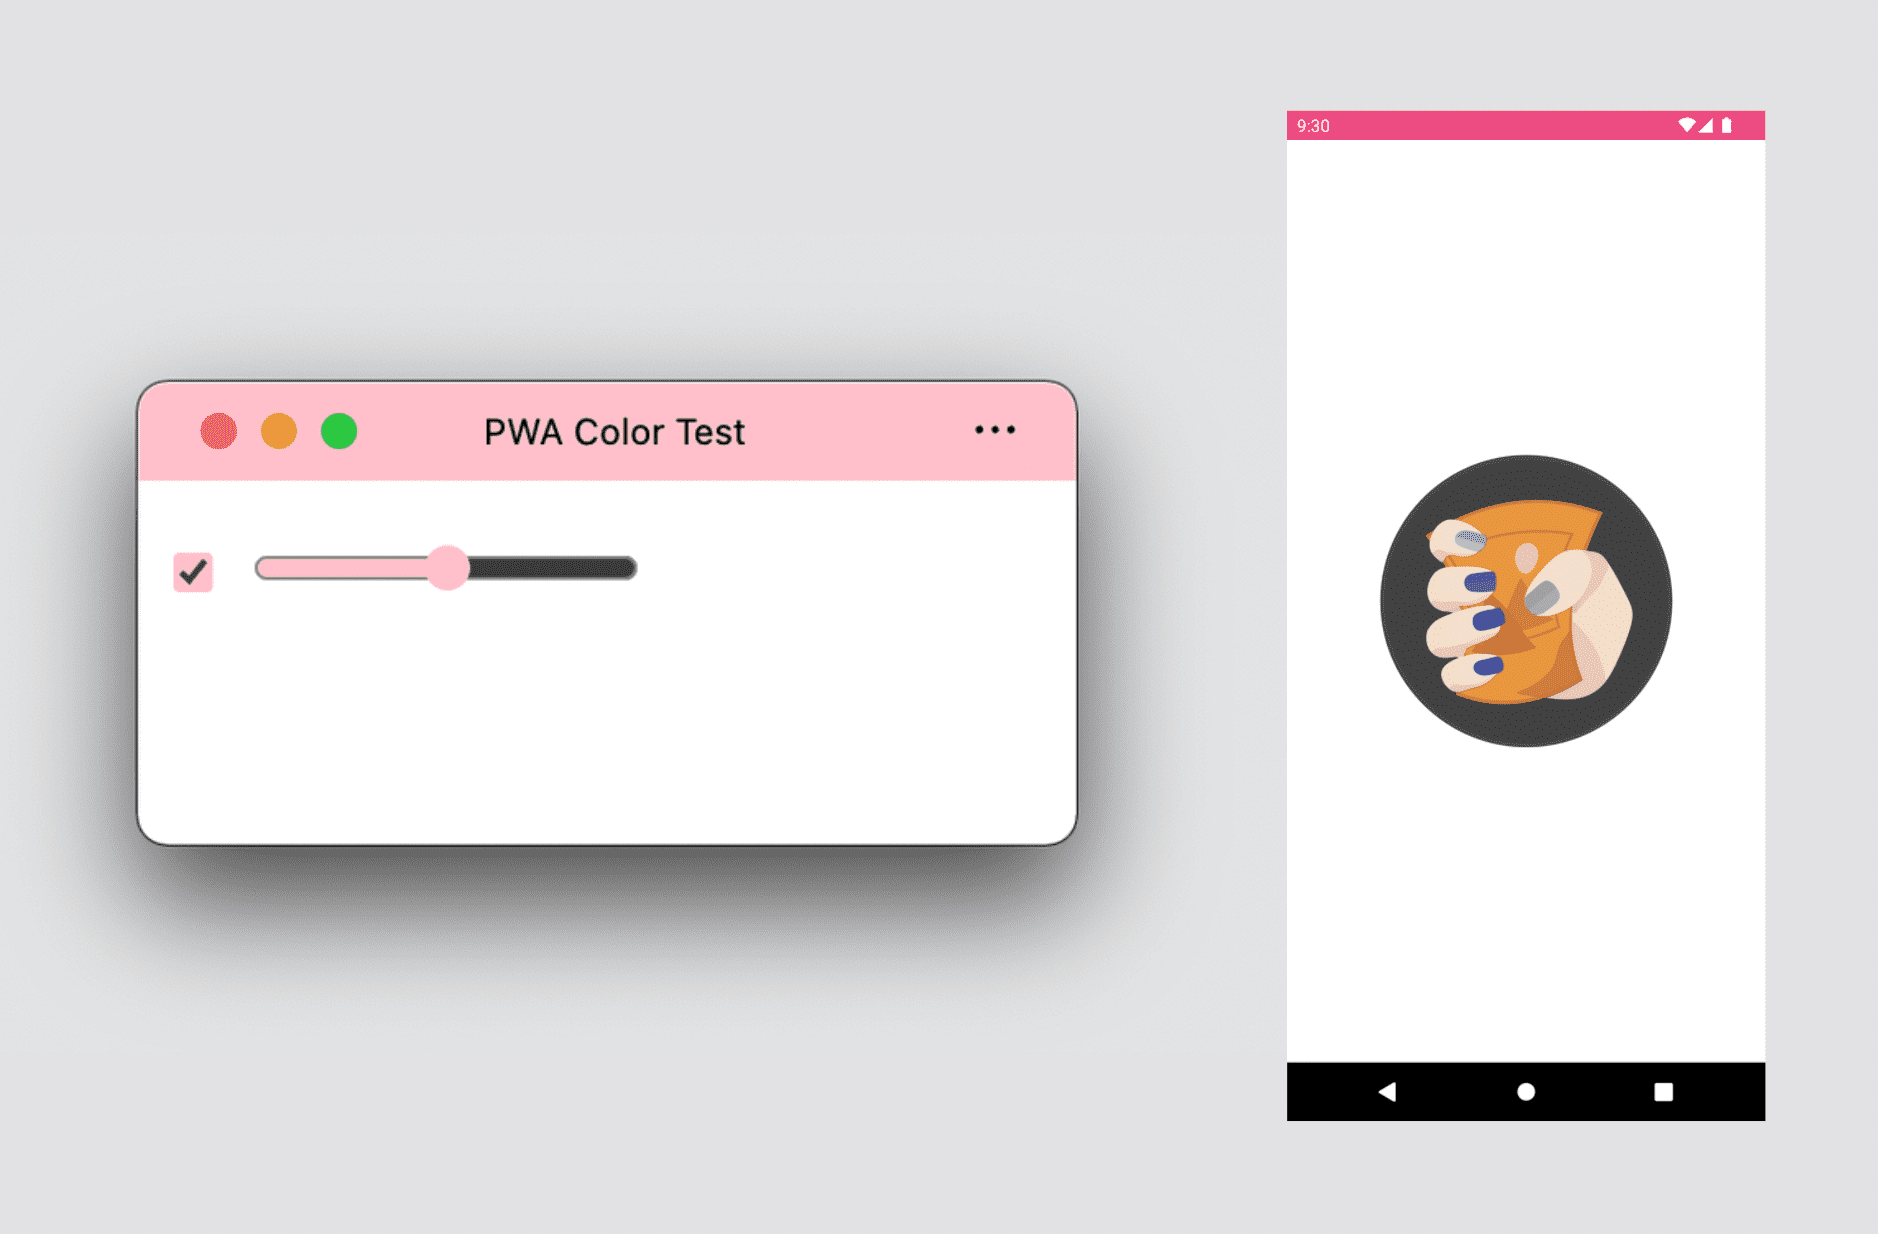 डेस्कटॉप PWA में थीम और बैकग्राउंड के रंग दिख रहे हैं. साथ ही, Android की PWA की स्प्लैश स्क्रीन दिख रही है.